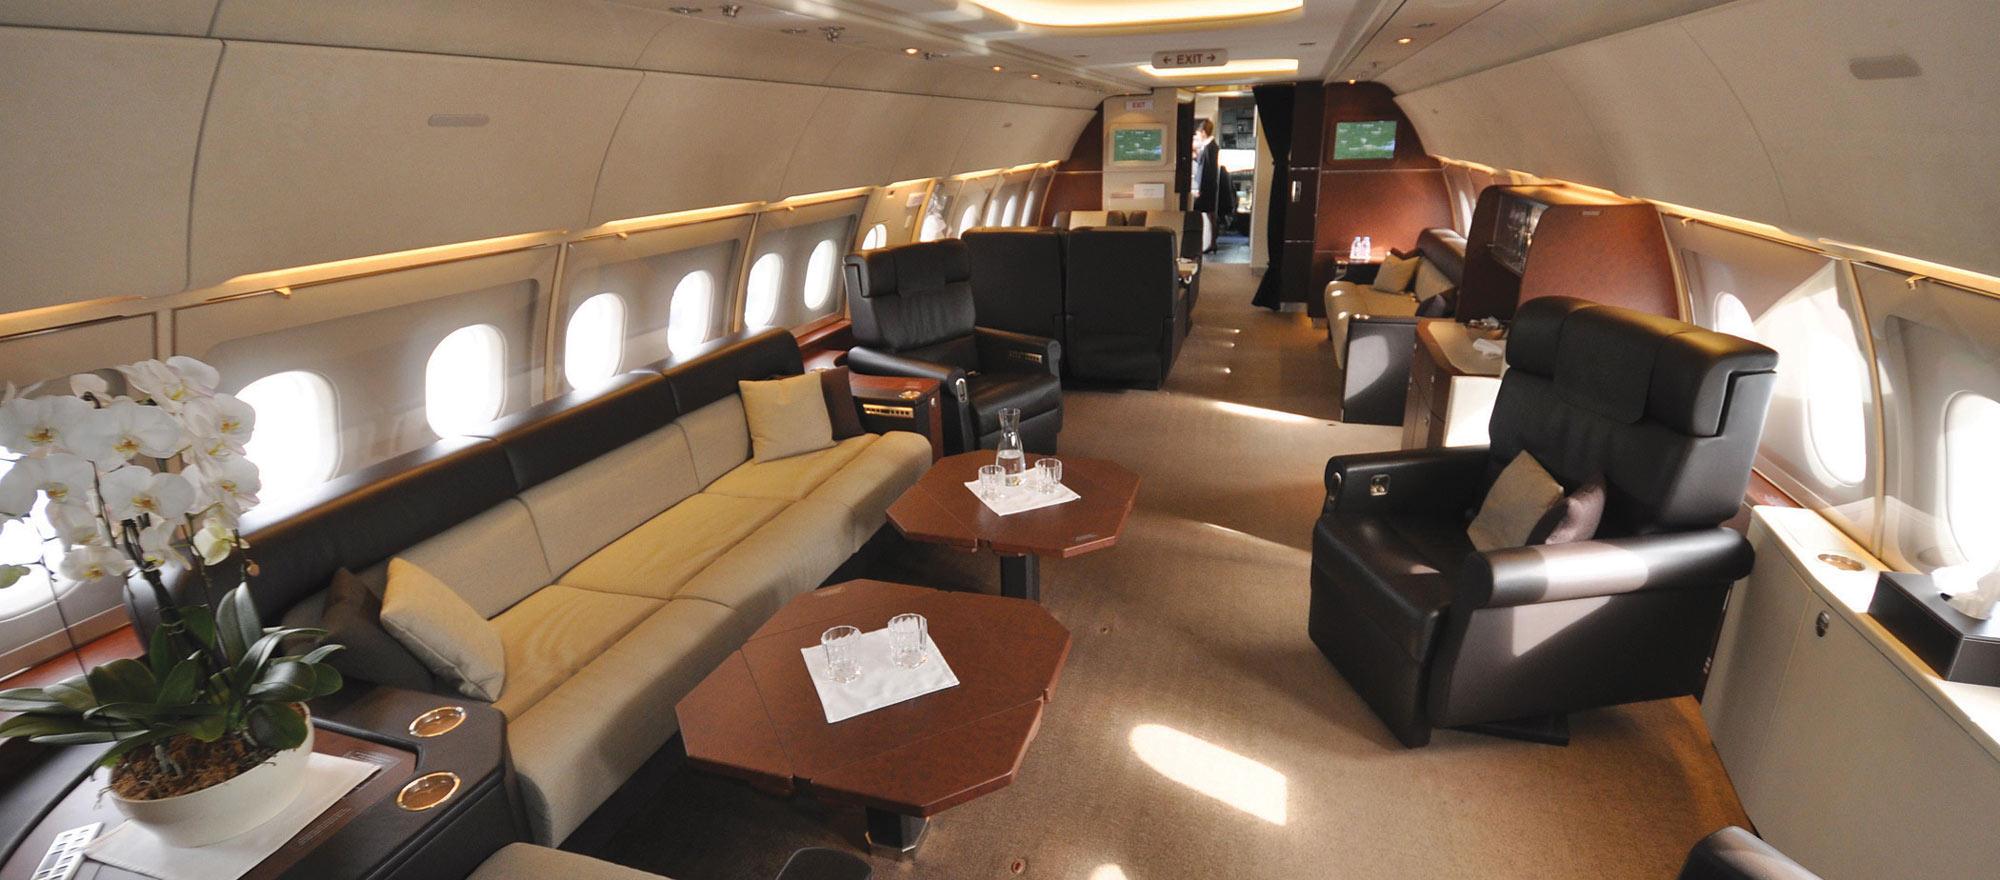 A Flying Mansion Business Jet Traveler